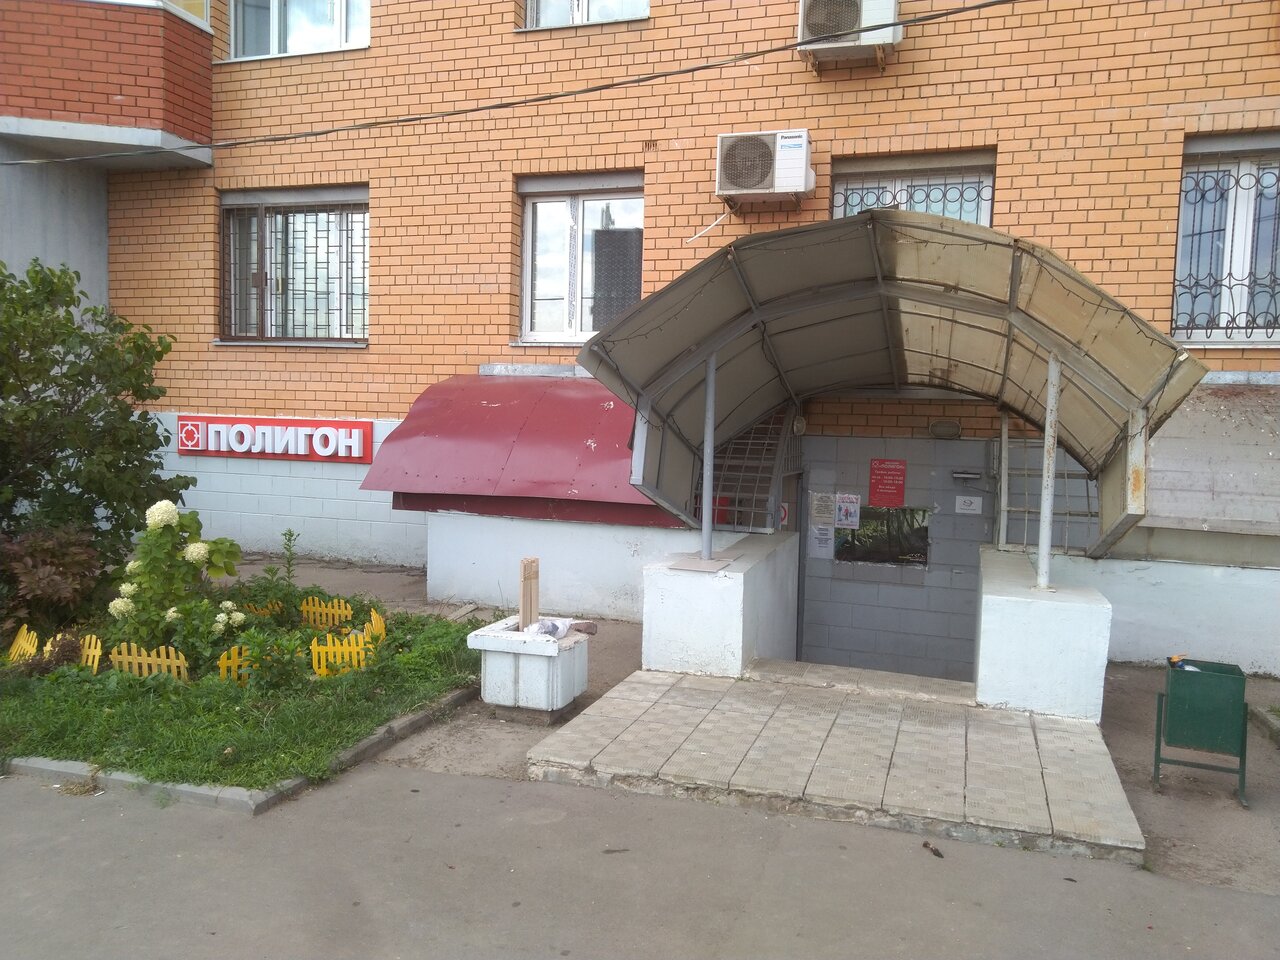 Армейский магазин "Полигон" на Академической площади в Троицке